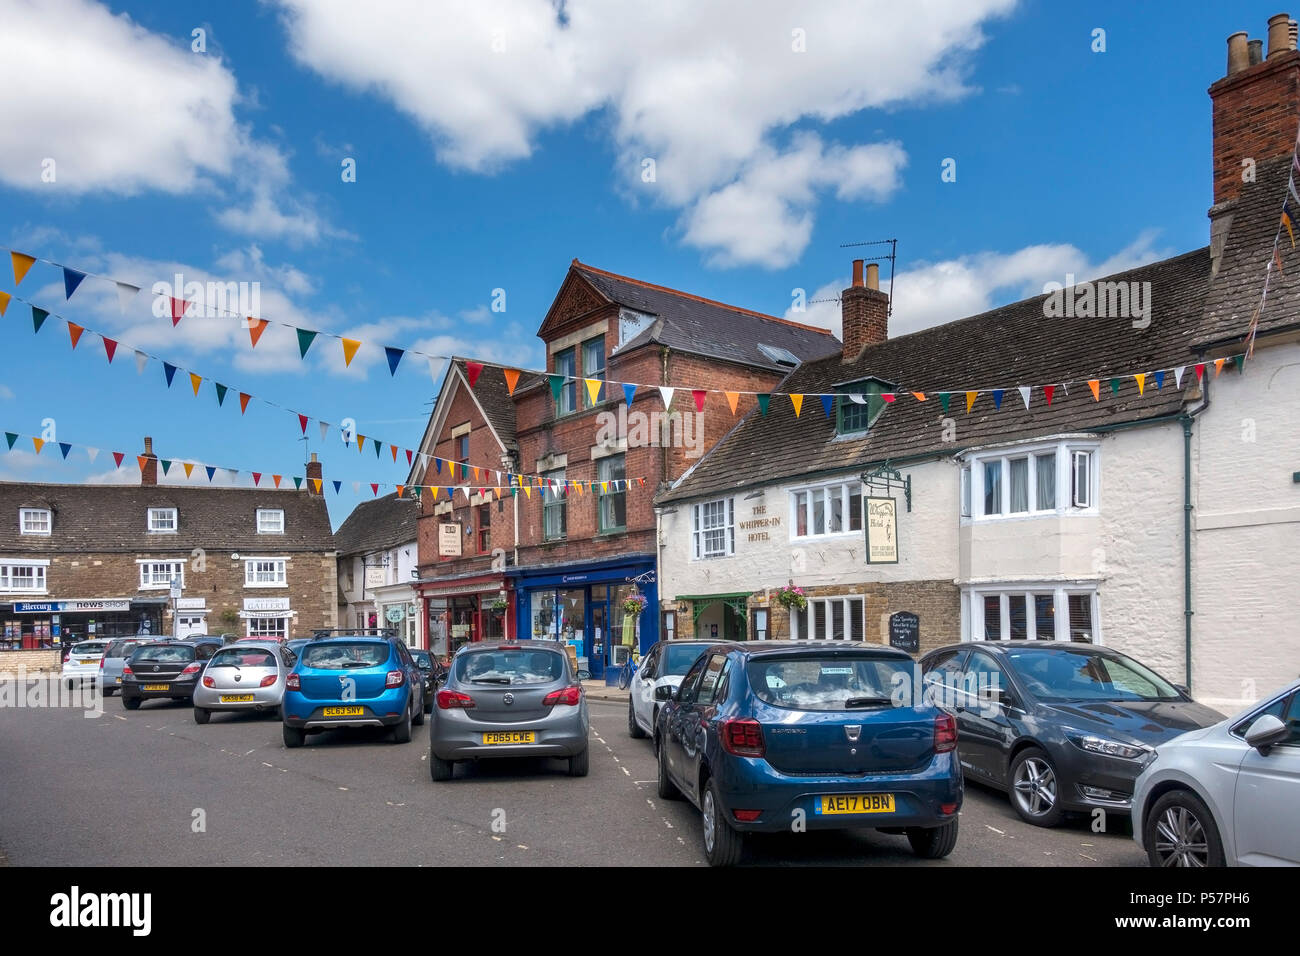 Macchine parcheggiate e bandiera bunting, Oakham Market Place, Rutland, England, Regno Unito Foto Stock